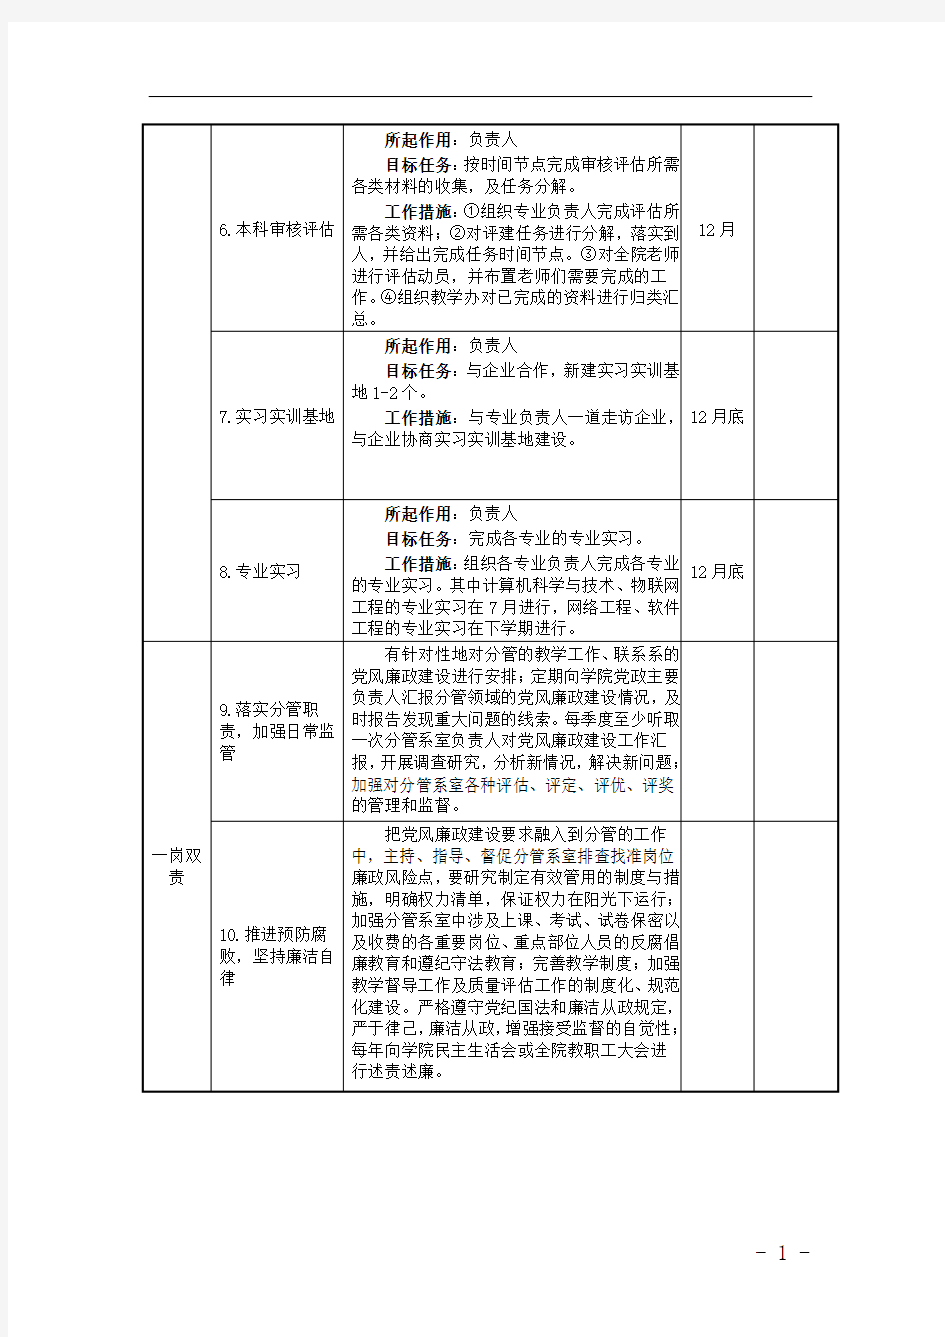 长江大学中层干部2017年度工作目标项目清单